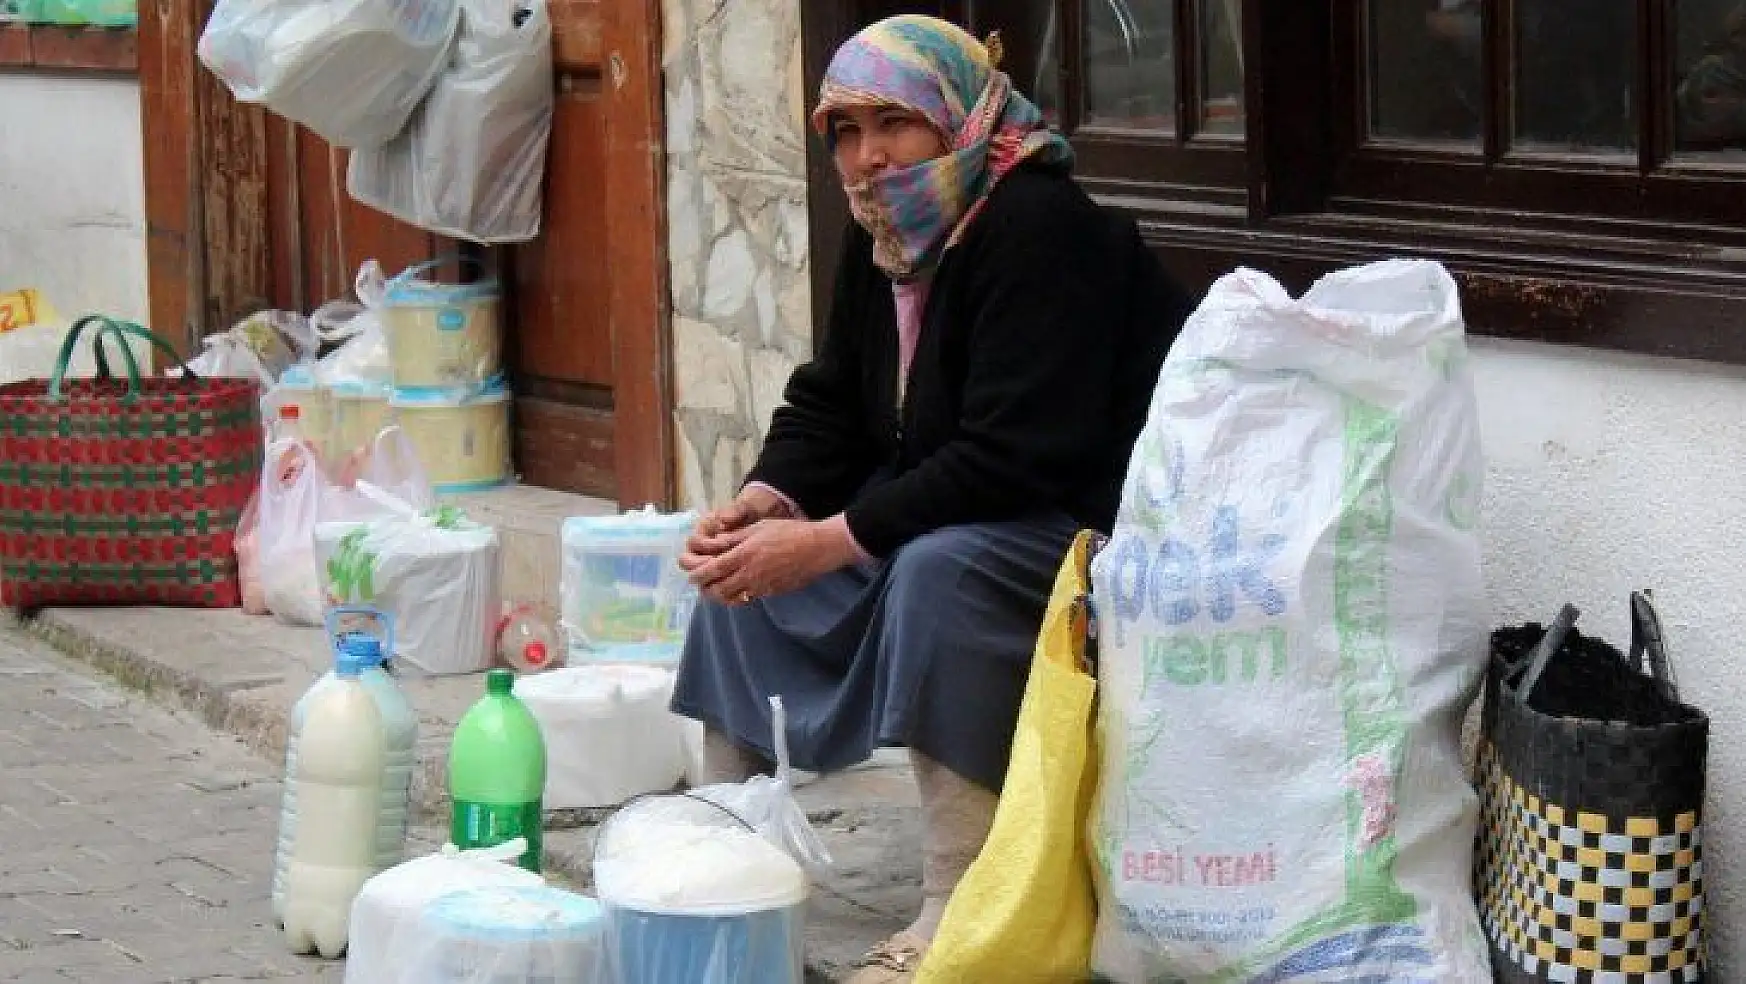 Menteşe'nin yoğurtçu kadınları sokaktan kurtulmak istiyor